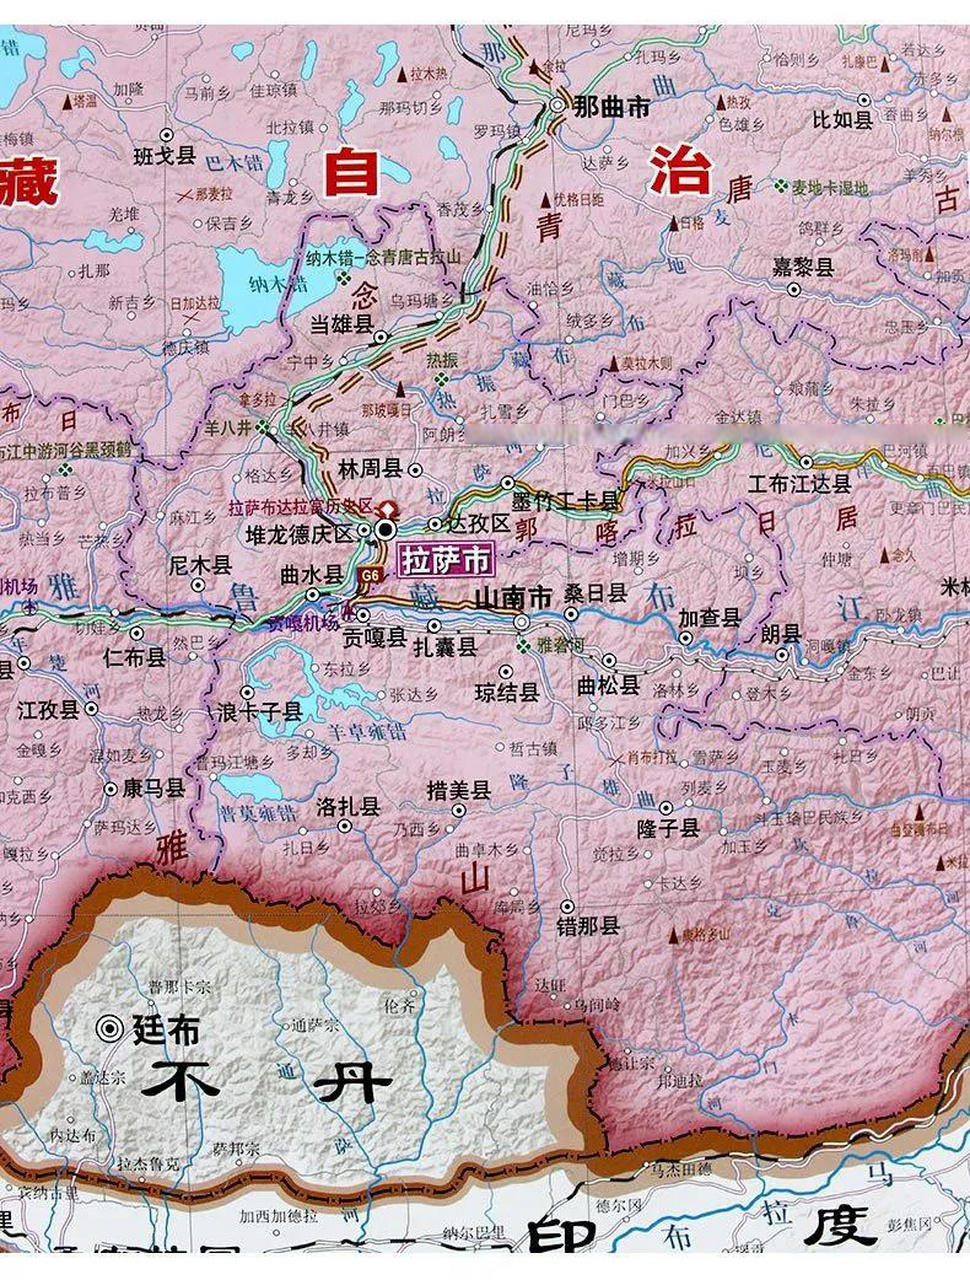 恭喜西藏新增两个县级市,米林县撤县设是,设立县级米林市,由西藏自治